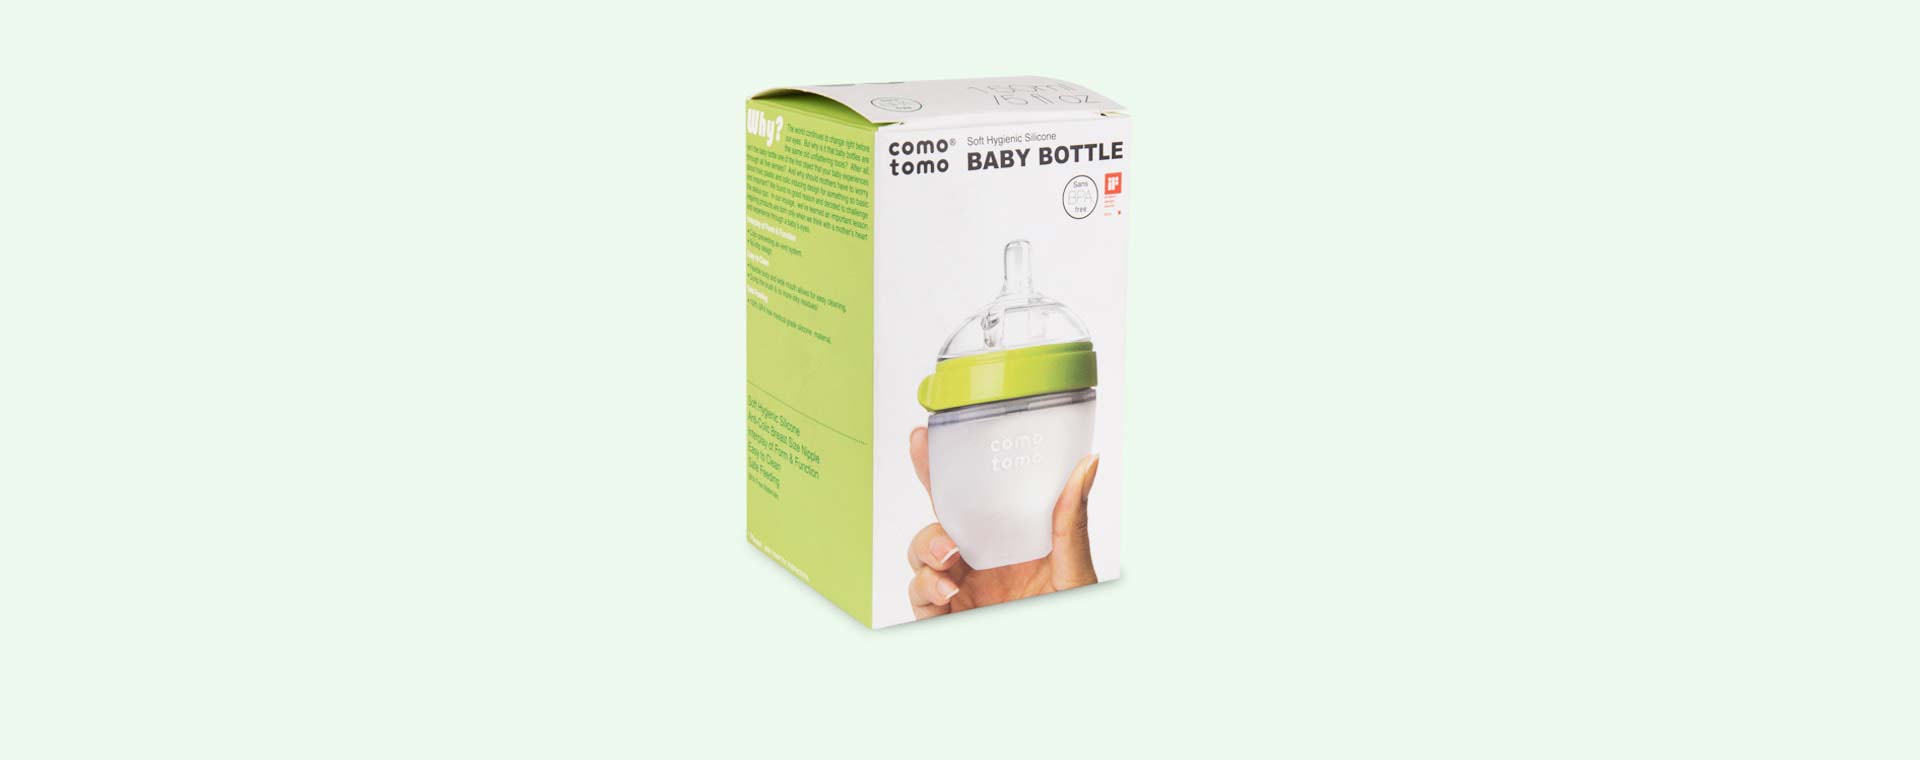 Green Comotomo 5oz Single Bottle